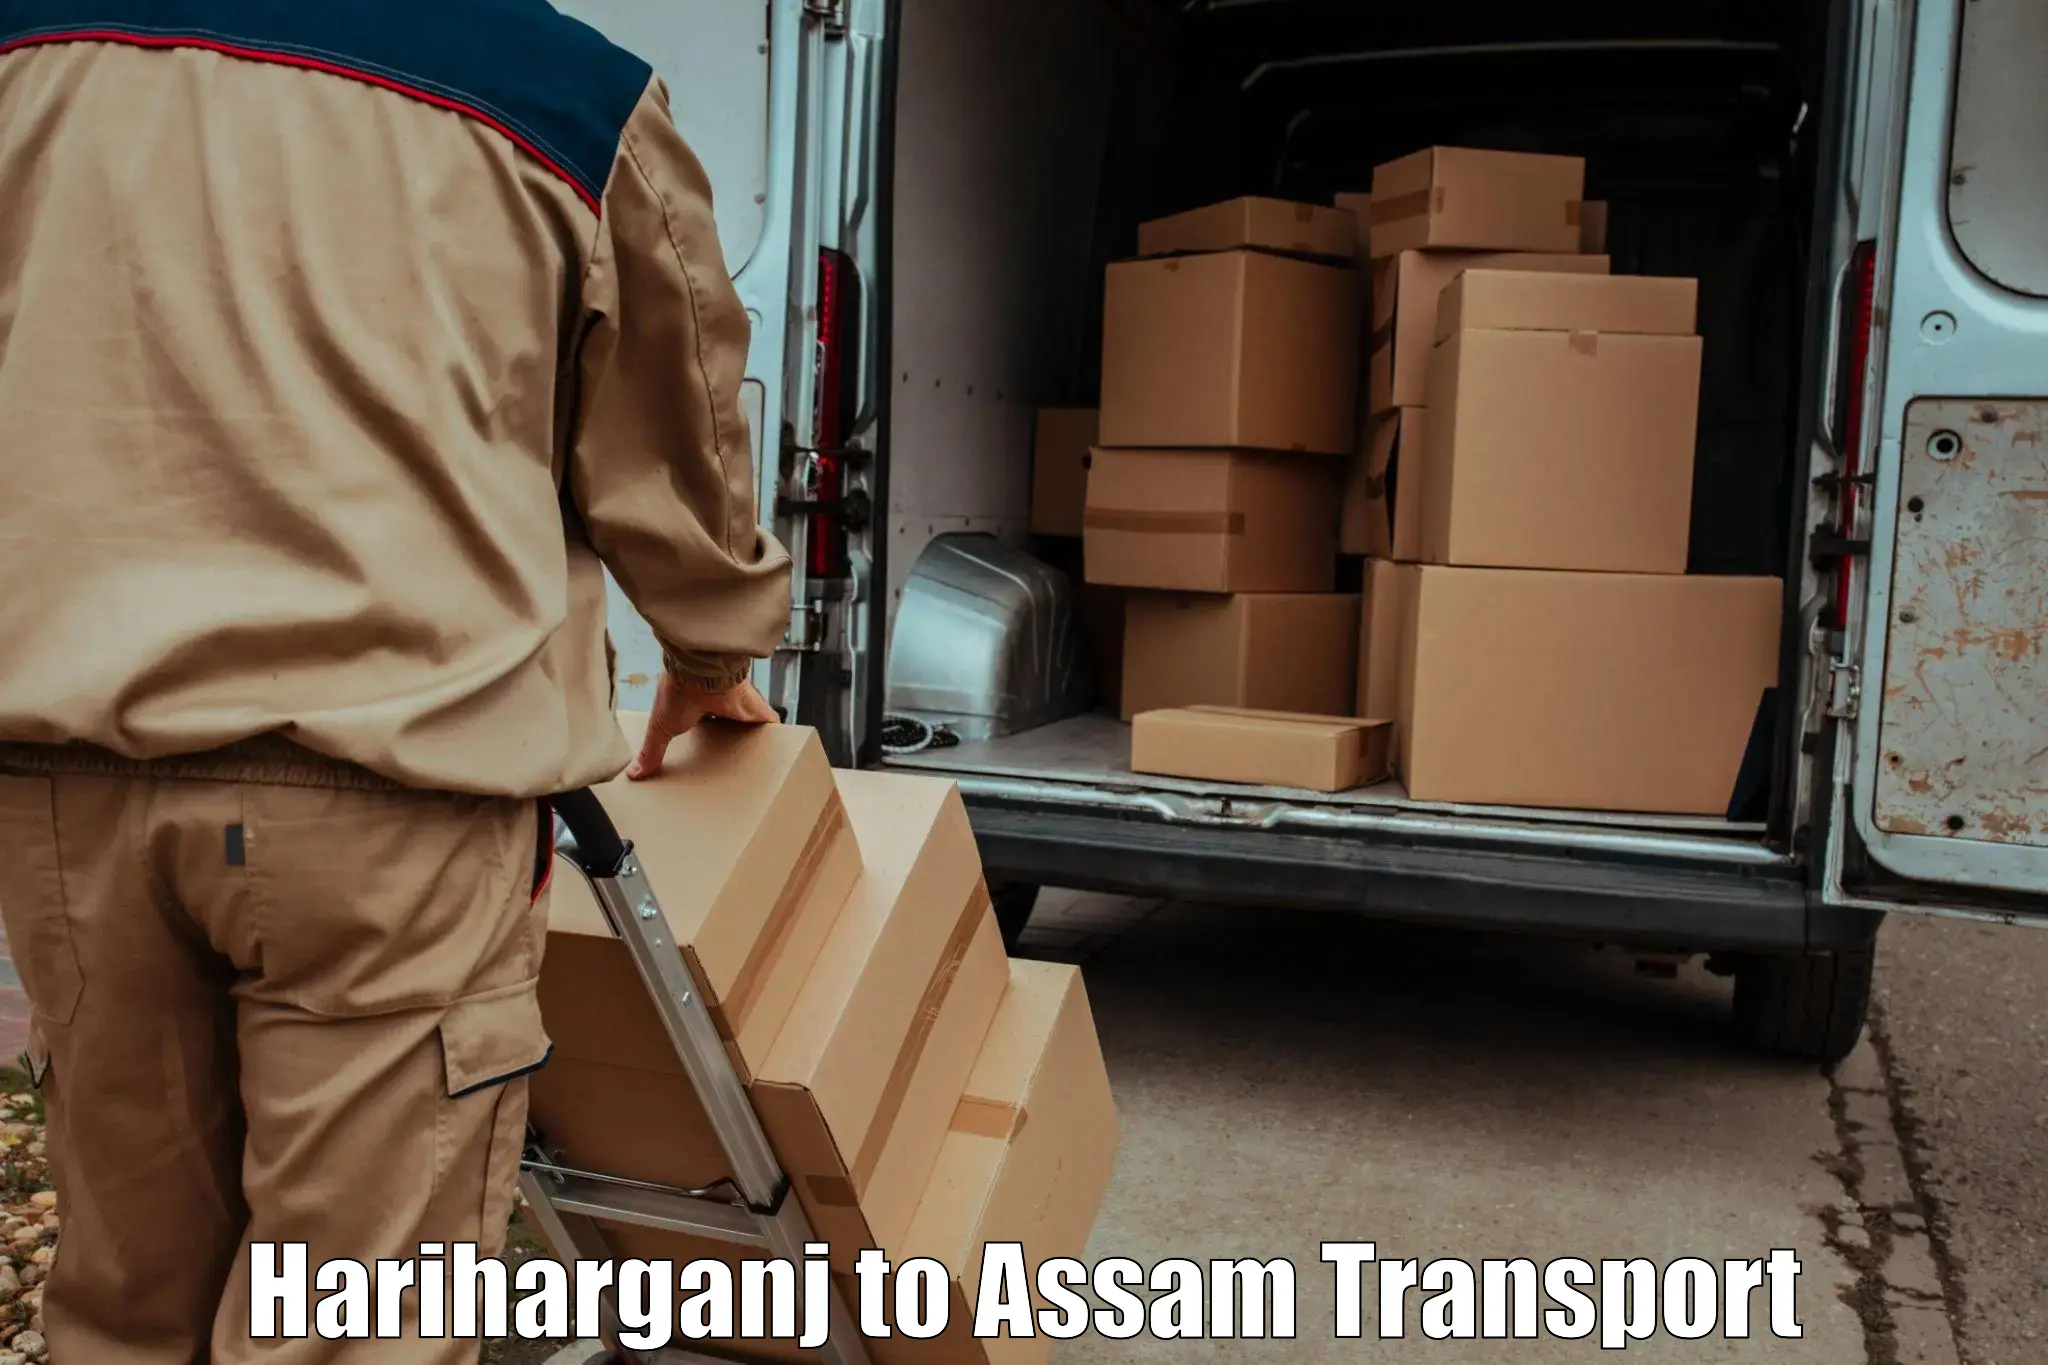 Nearest transport service Hariharganj to Karbi Anglong